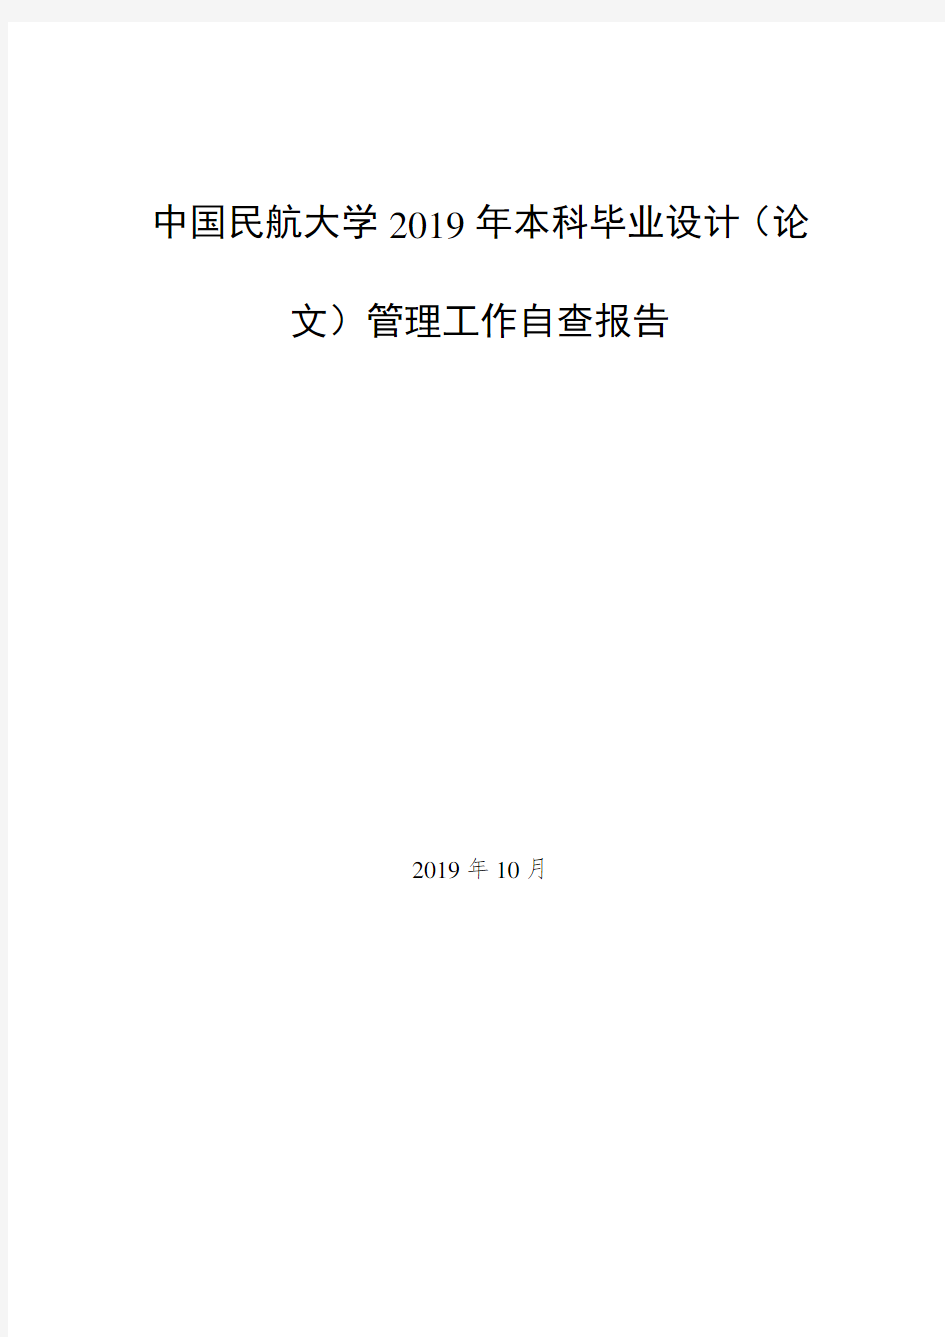 中国民航大学2019年本科毕业设计(论文)管理工作自查报告